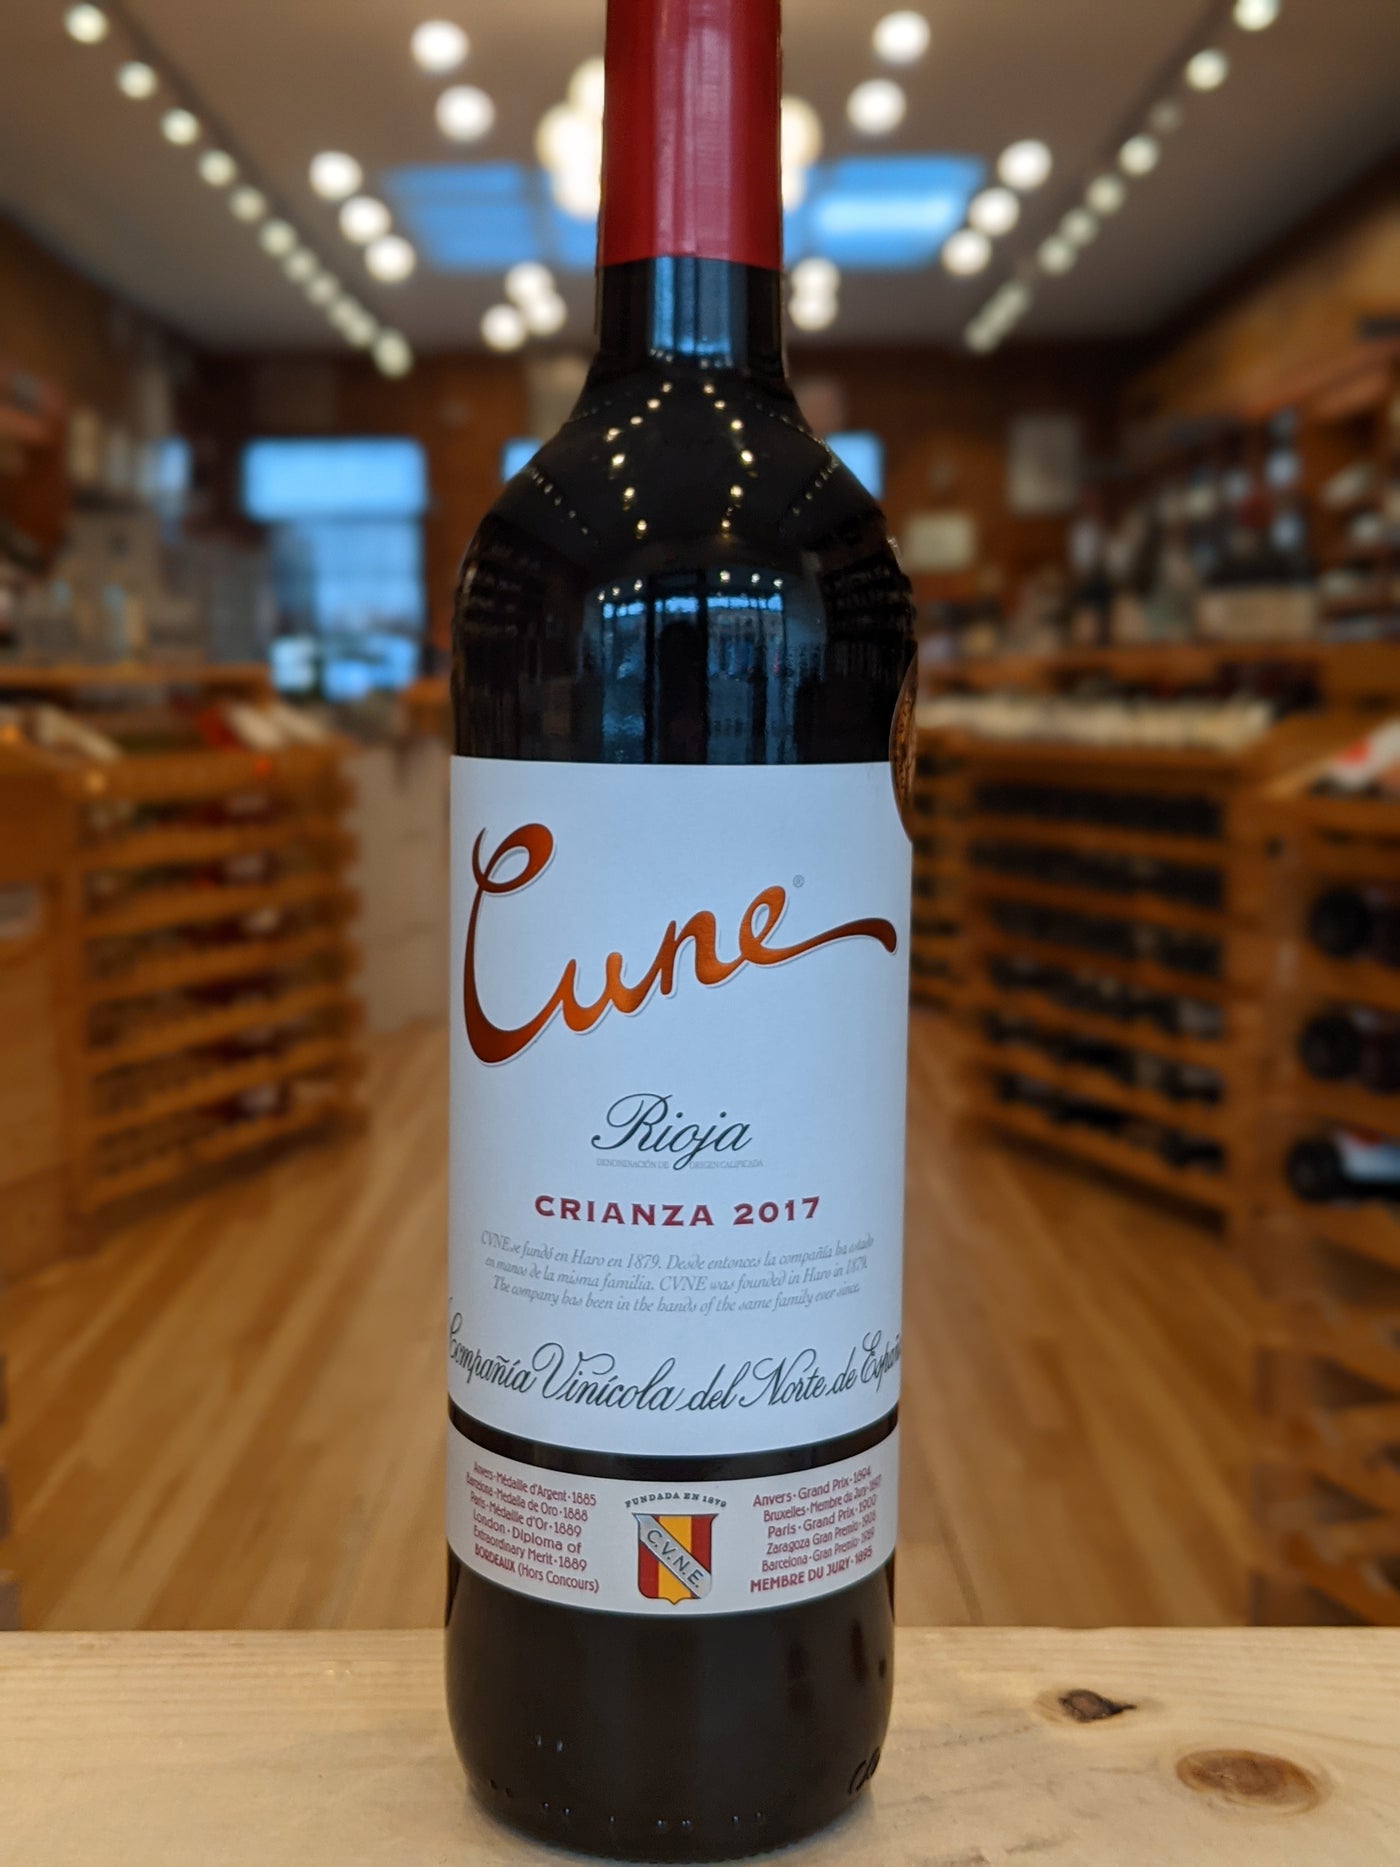 C.V.N.E. Cune Crianza Rioja 2019